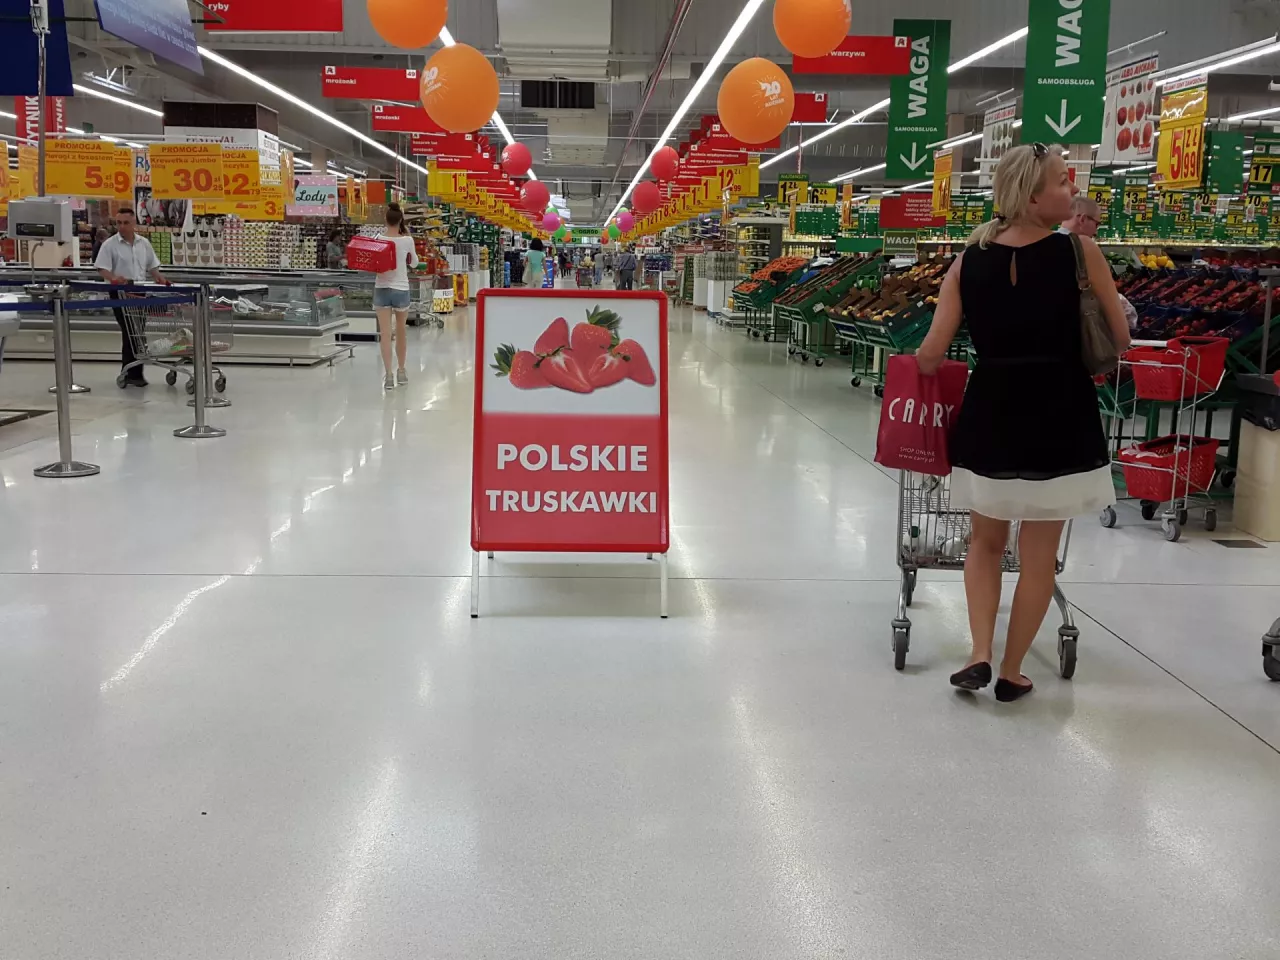 Na zdj. hipermarket Auchan w Łomiankach (fot. wiadomoscihandlowe.pl)